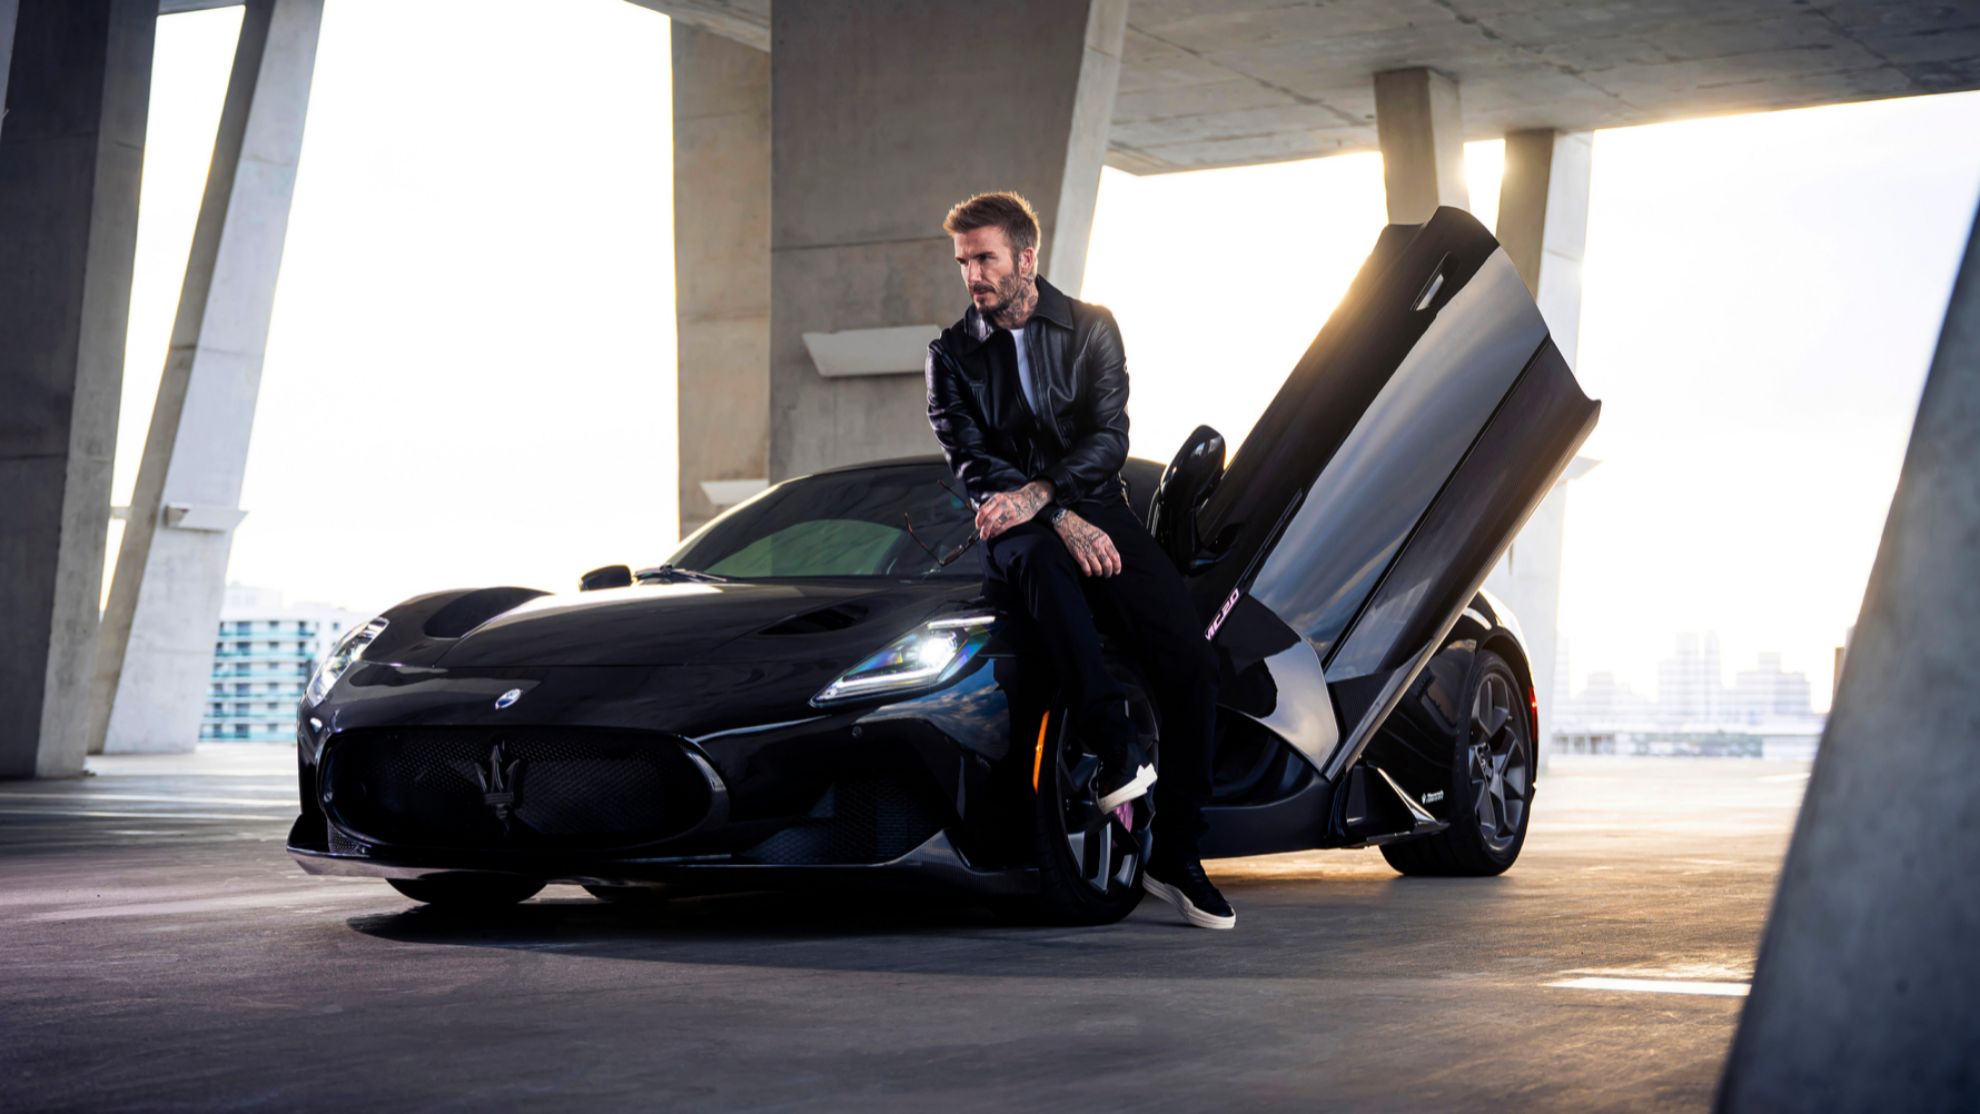 David Beckham - Maserati MC20 Fuoriserie Edition - deportivo  - centro stile - personalizacion